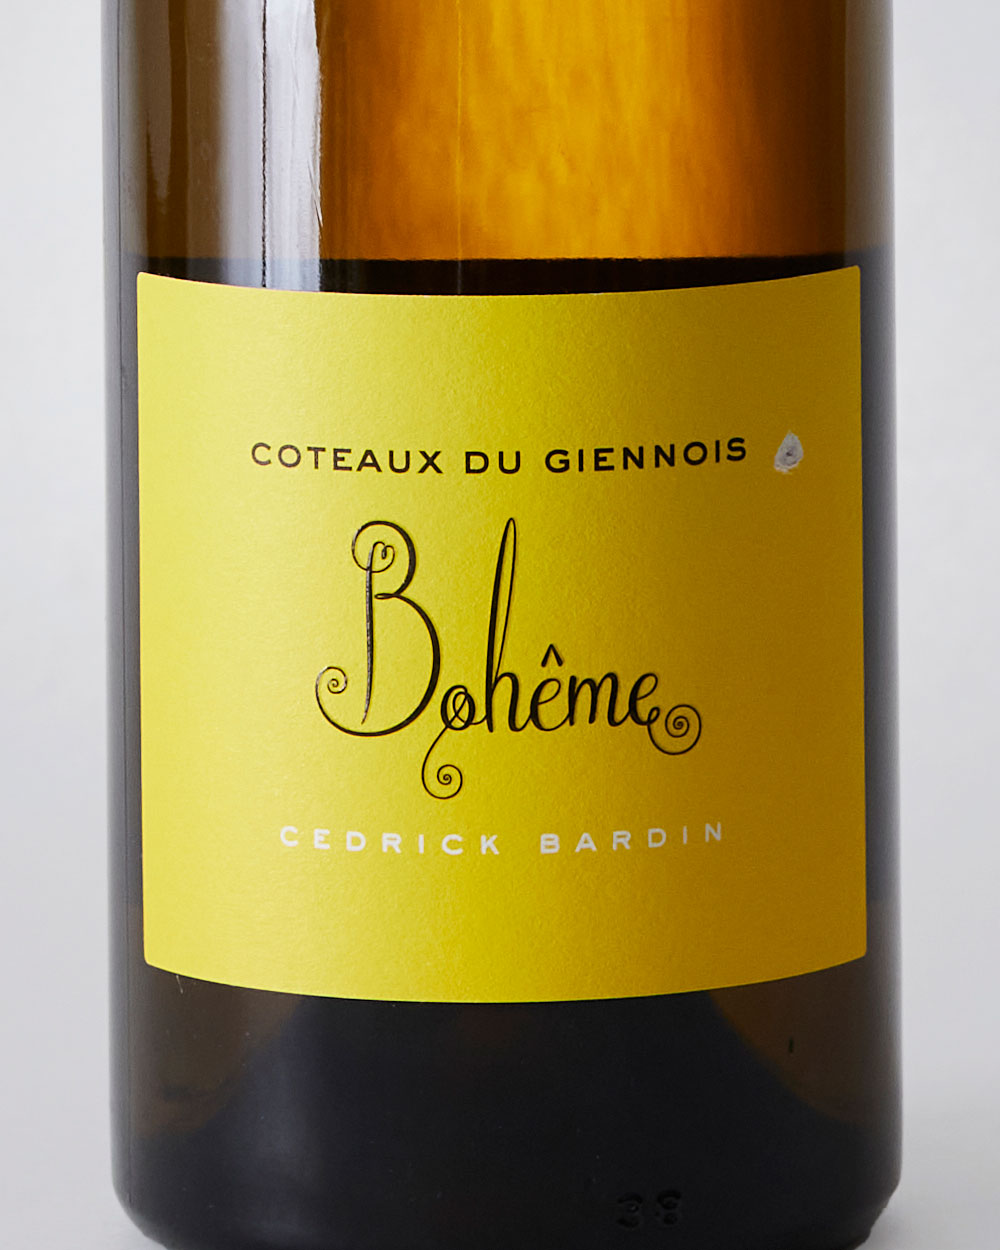 Coteaux du Giennois Boheme Cedrick Bardin label